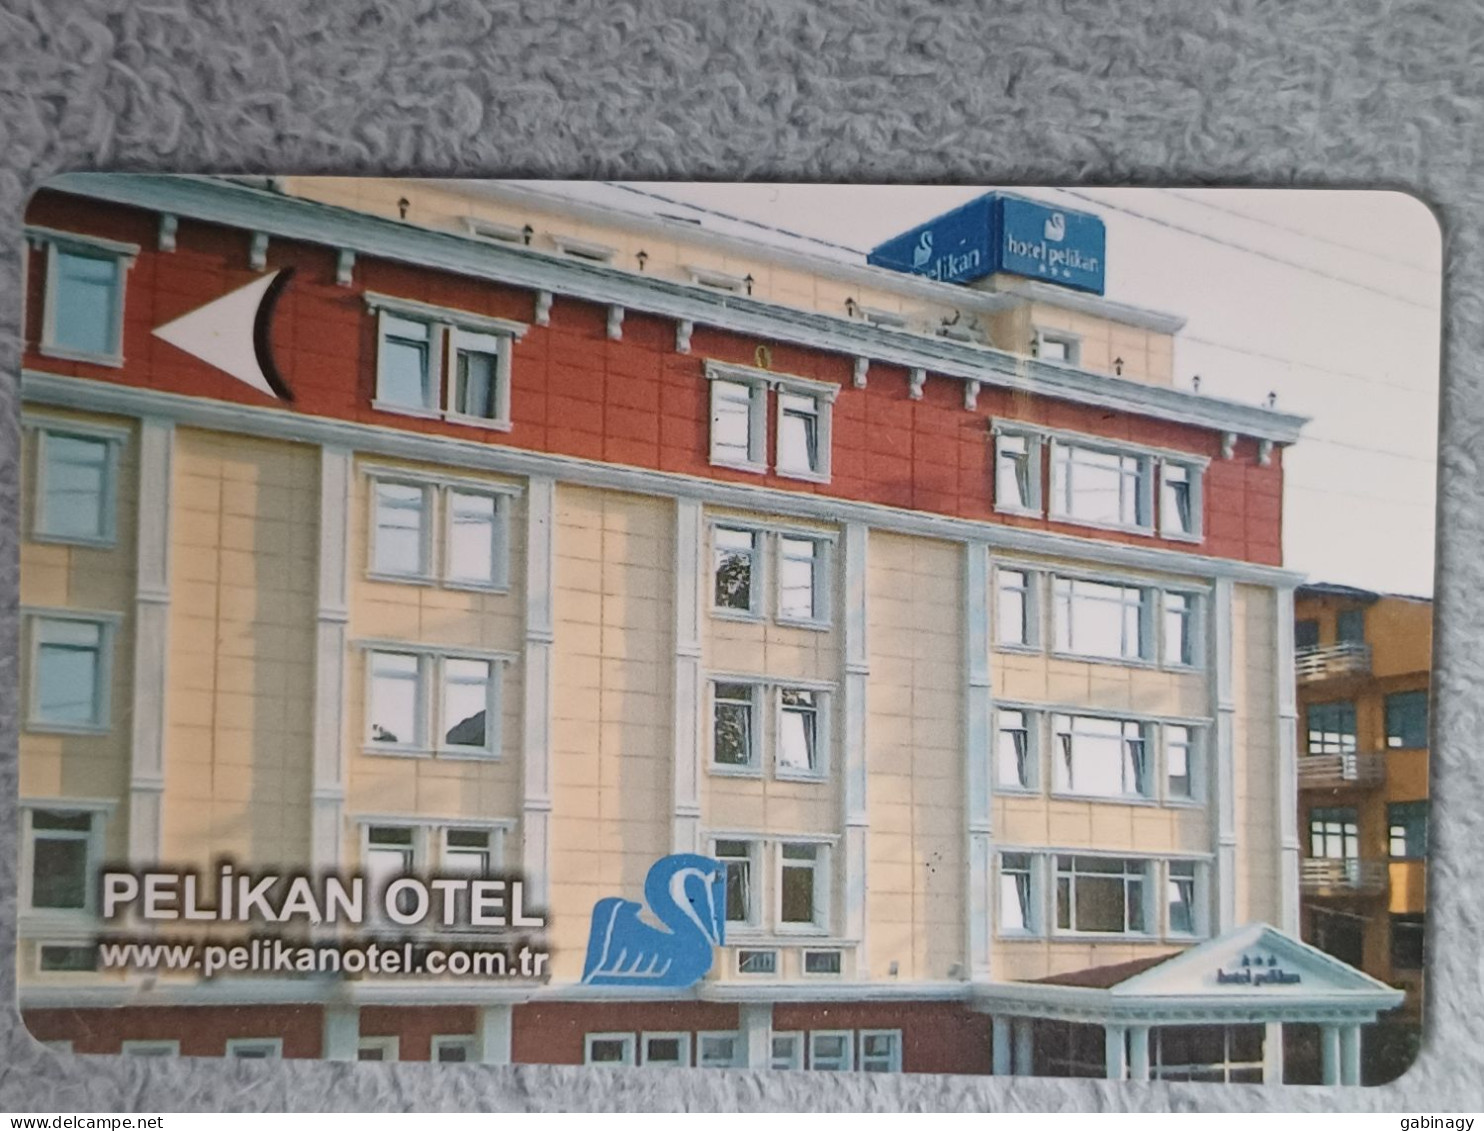 HOTEL KEYS - 2558 - TURKEY - PELIKAN HOTEL - Hotelsleutels (kaarten)